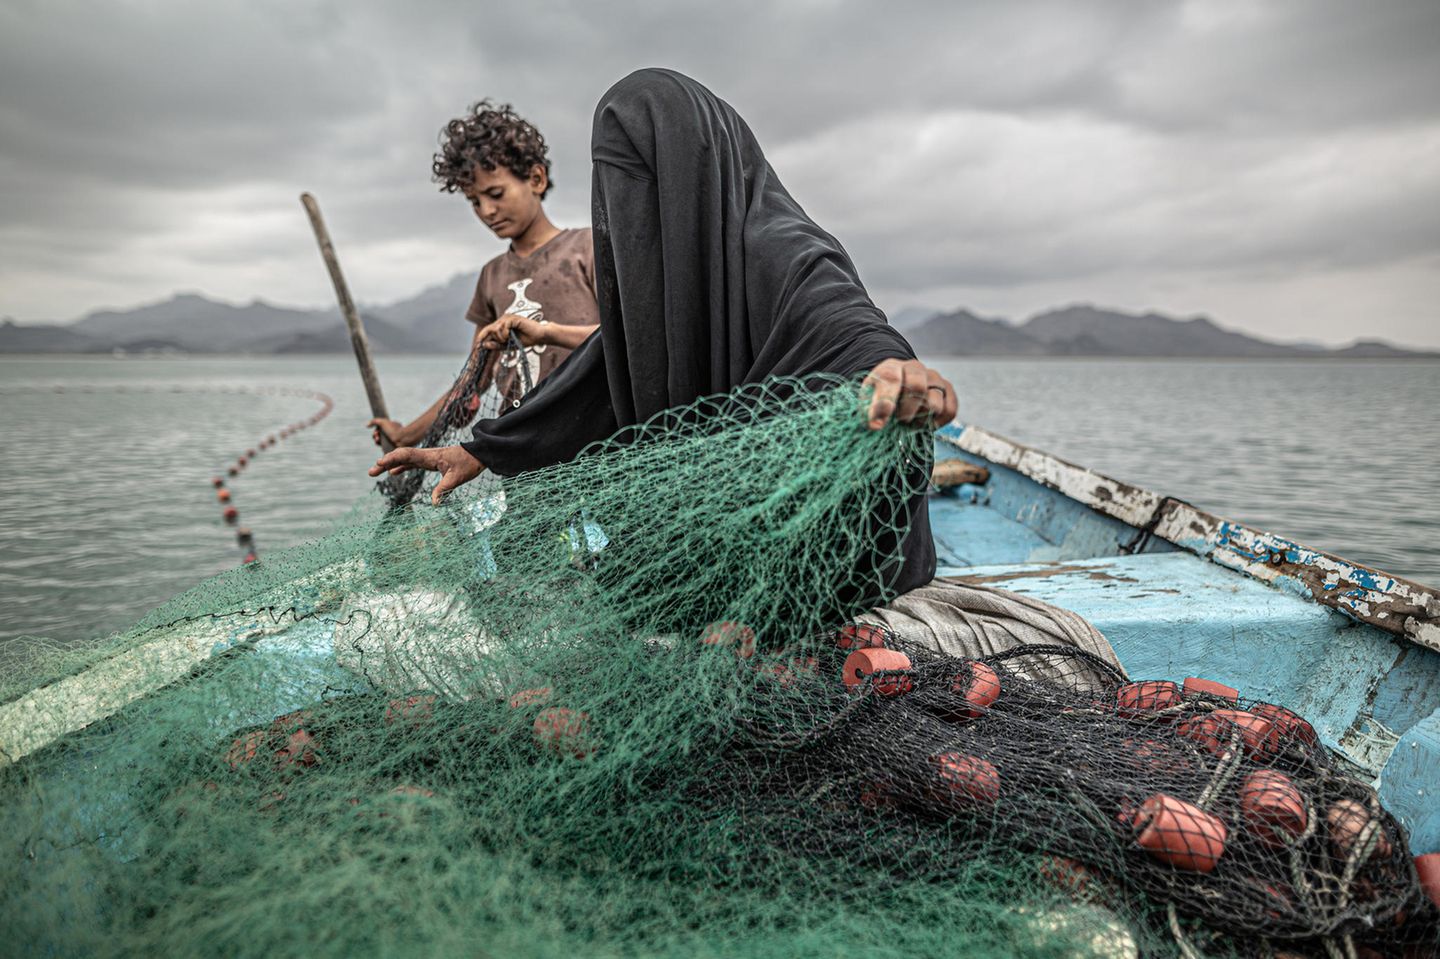 World Press Photo 2021: Frau mit Kind beim fischen